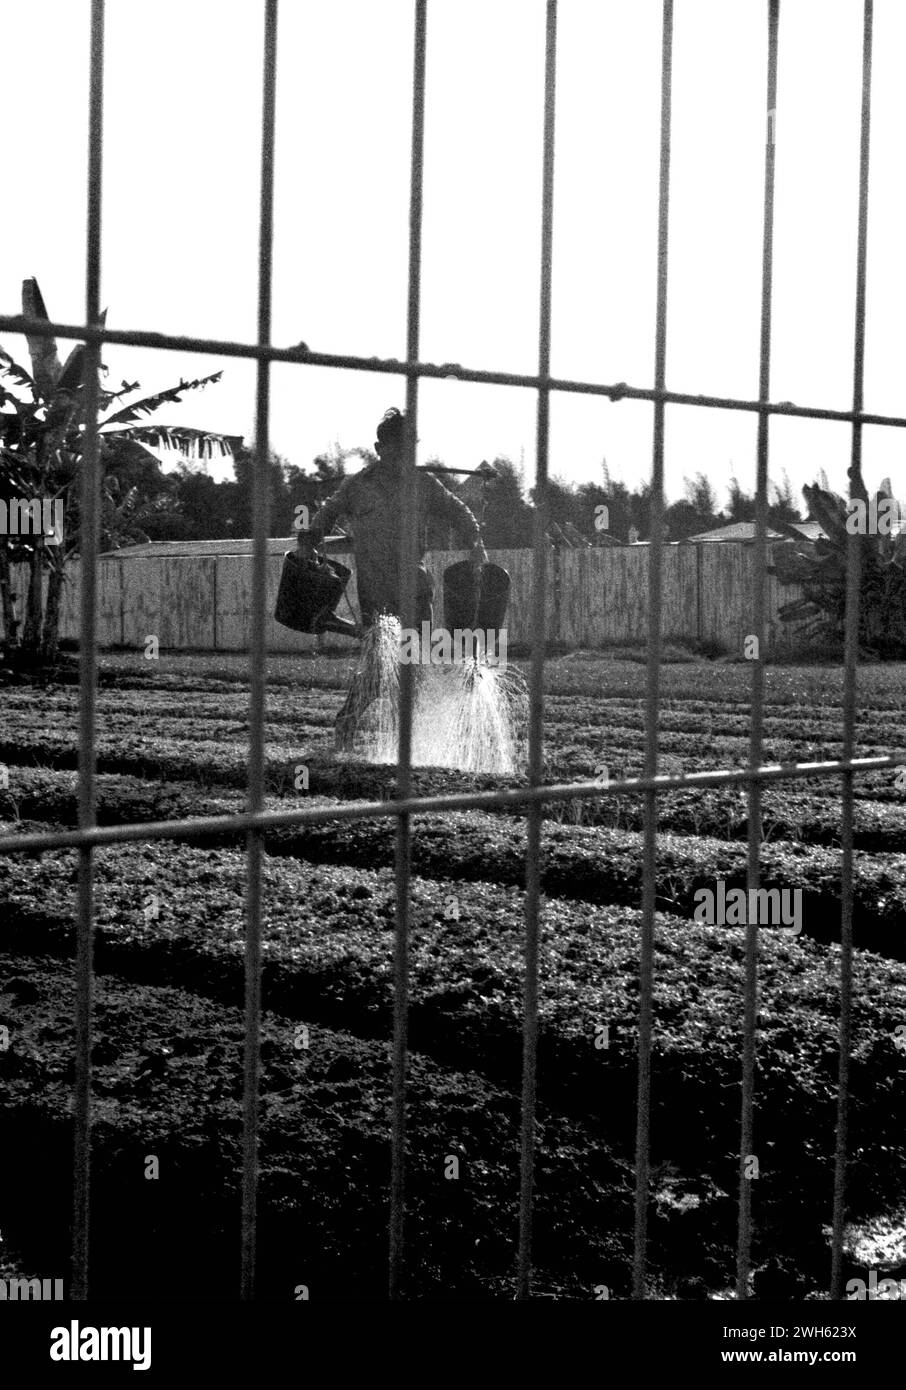 Un agriculteur urbain est photographié à travers une clôture de bord de route, alors qu’il arrose une terrasse de ferme maraîchère à Kelapa Gading, Jakarta Nord, Jakarta, Indonésie. Banque D'Images